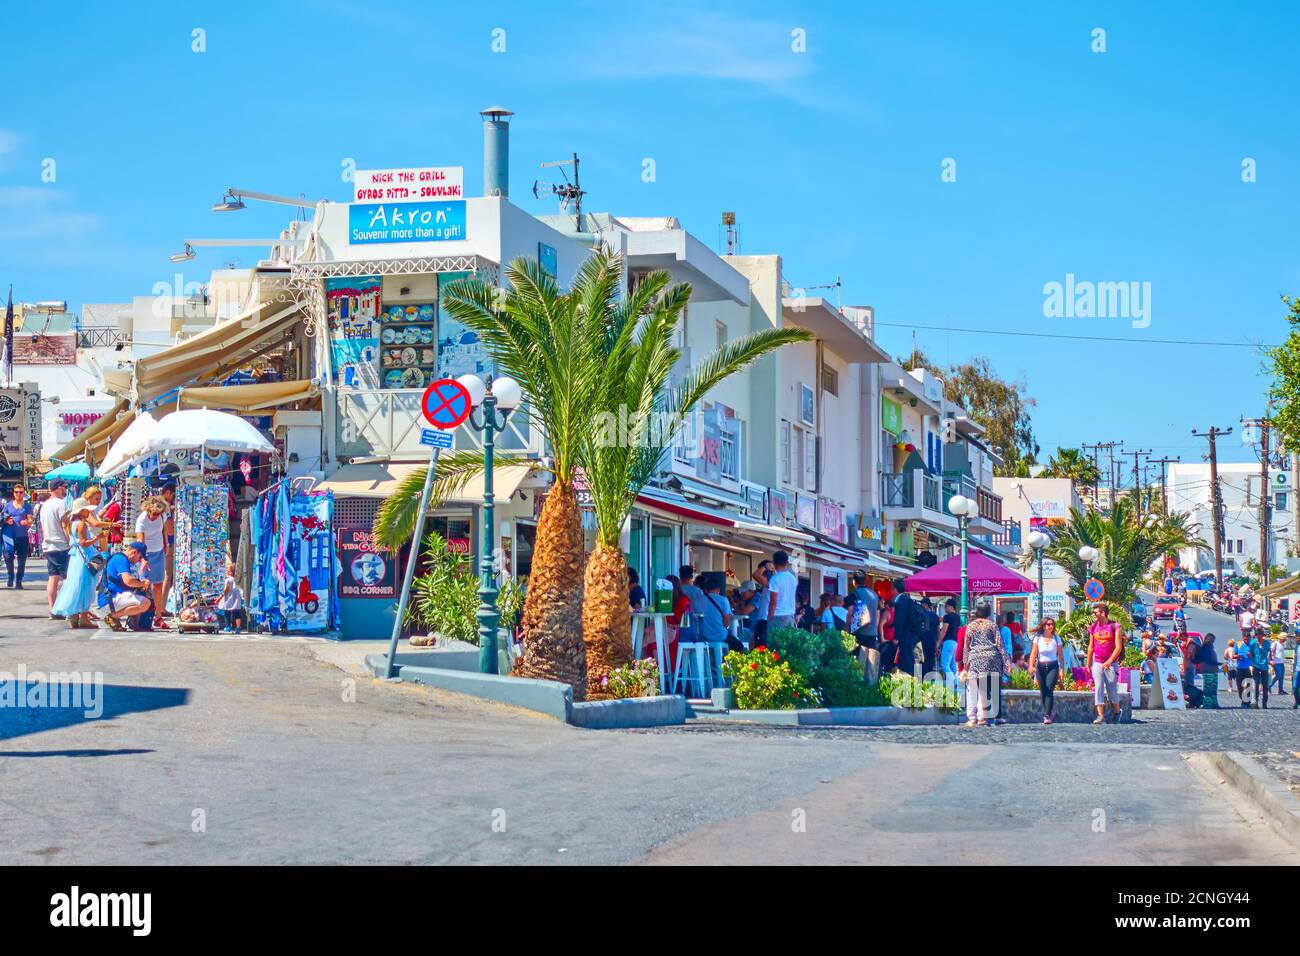 Fira, île de Santorini, Grèce - 25 avril 2018: Quartier commerçant avec des gens à pied à Fira (Thera) Banque D'Images